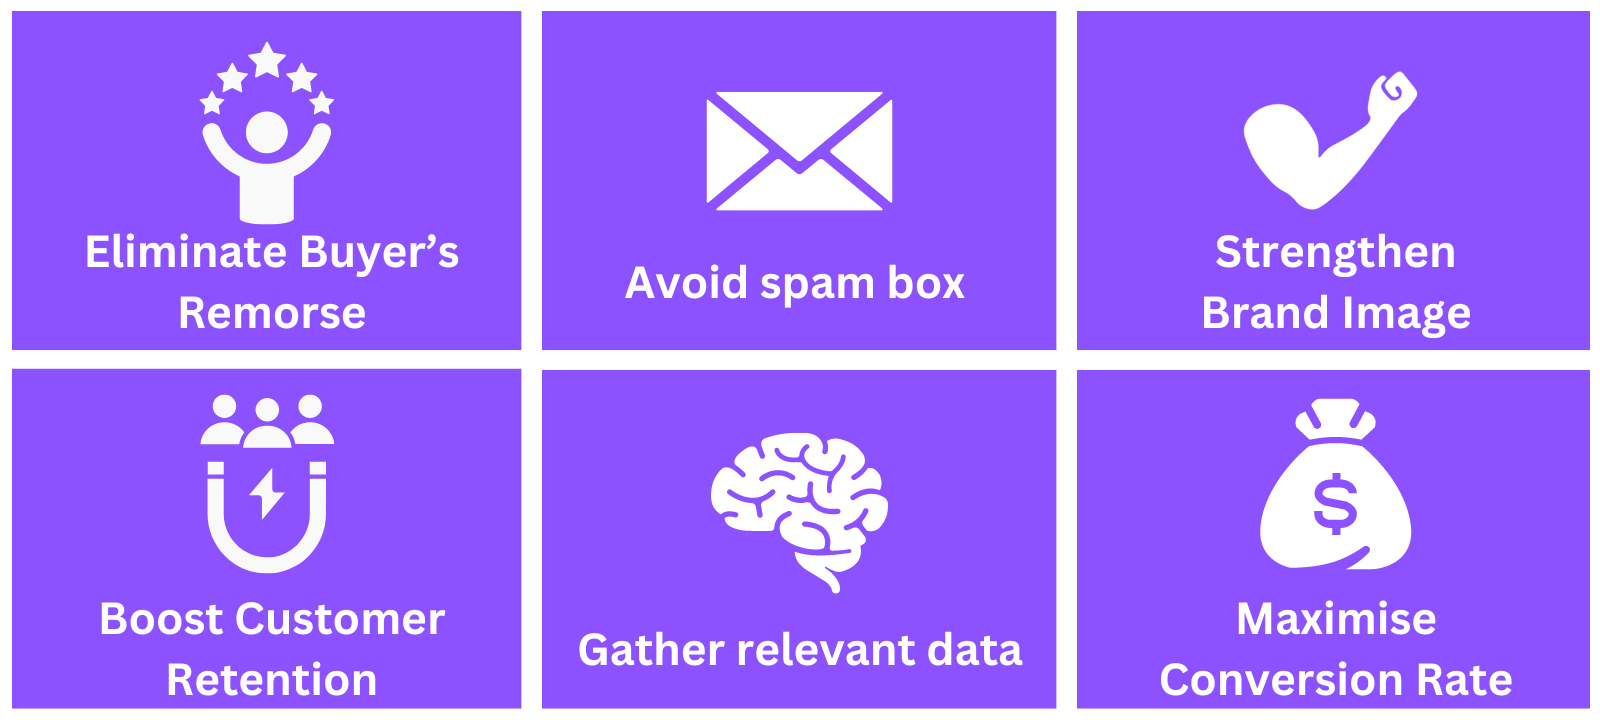 Emile Email Marketing Avoid Spam Box